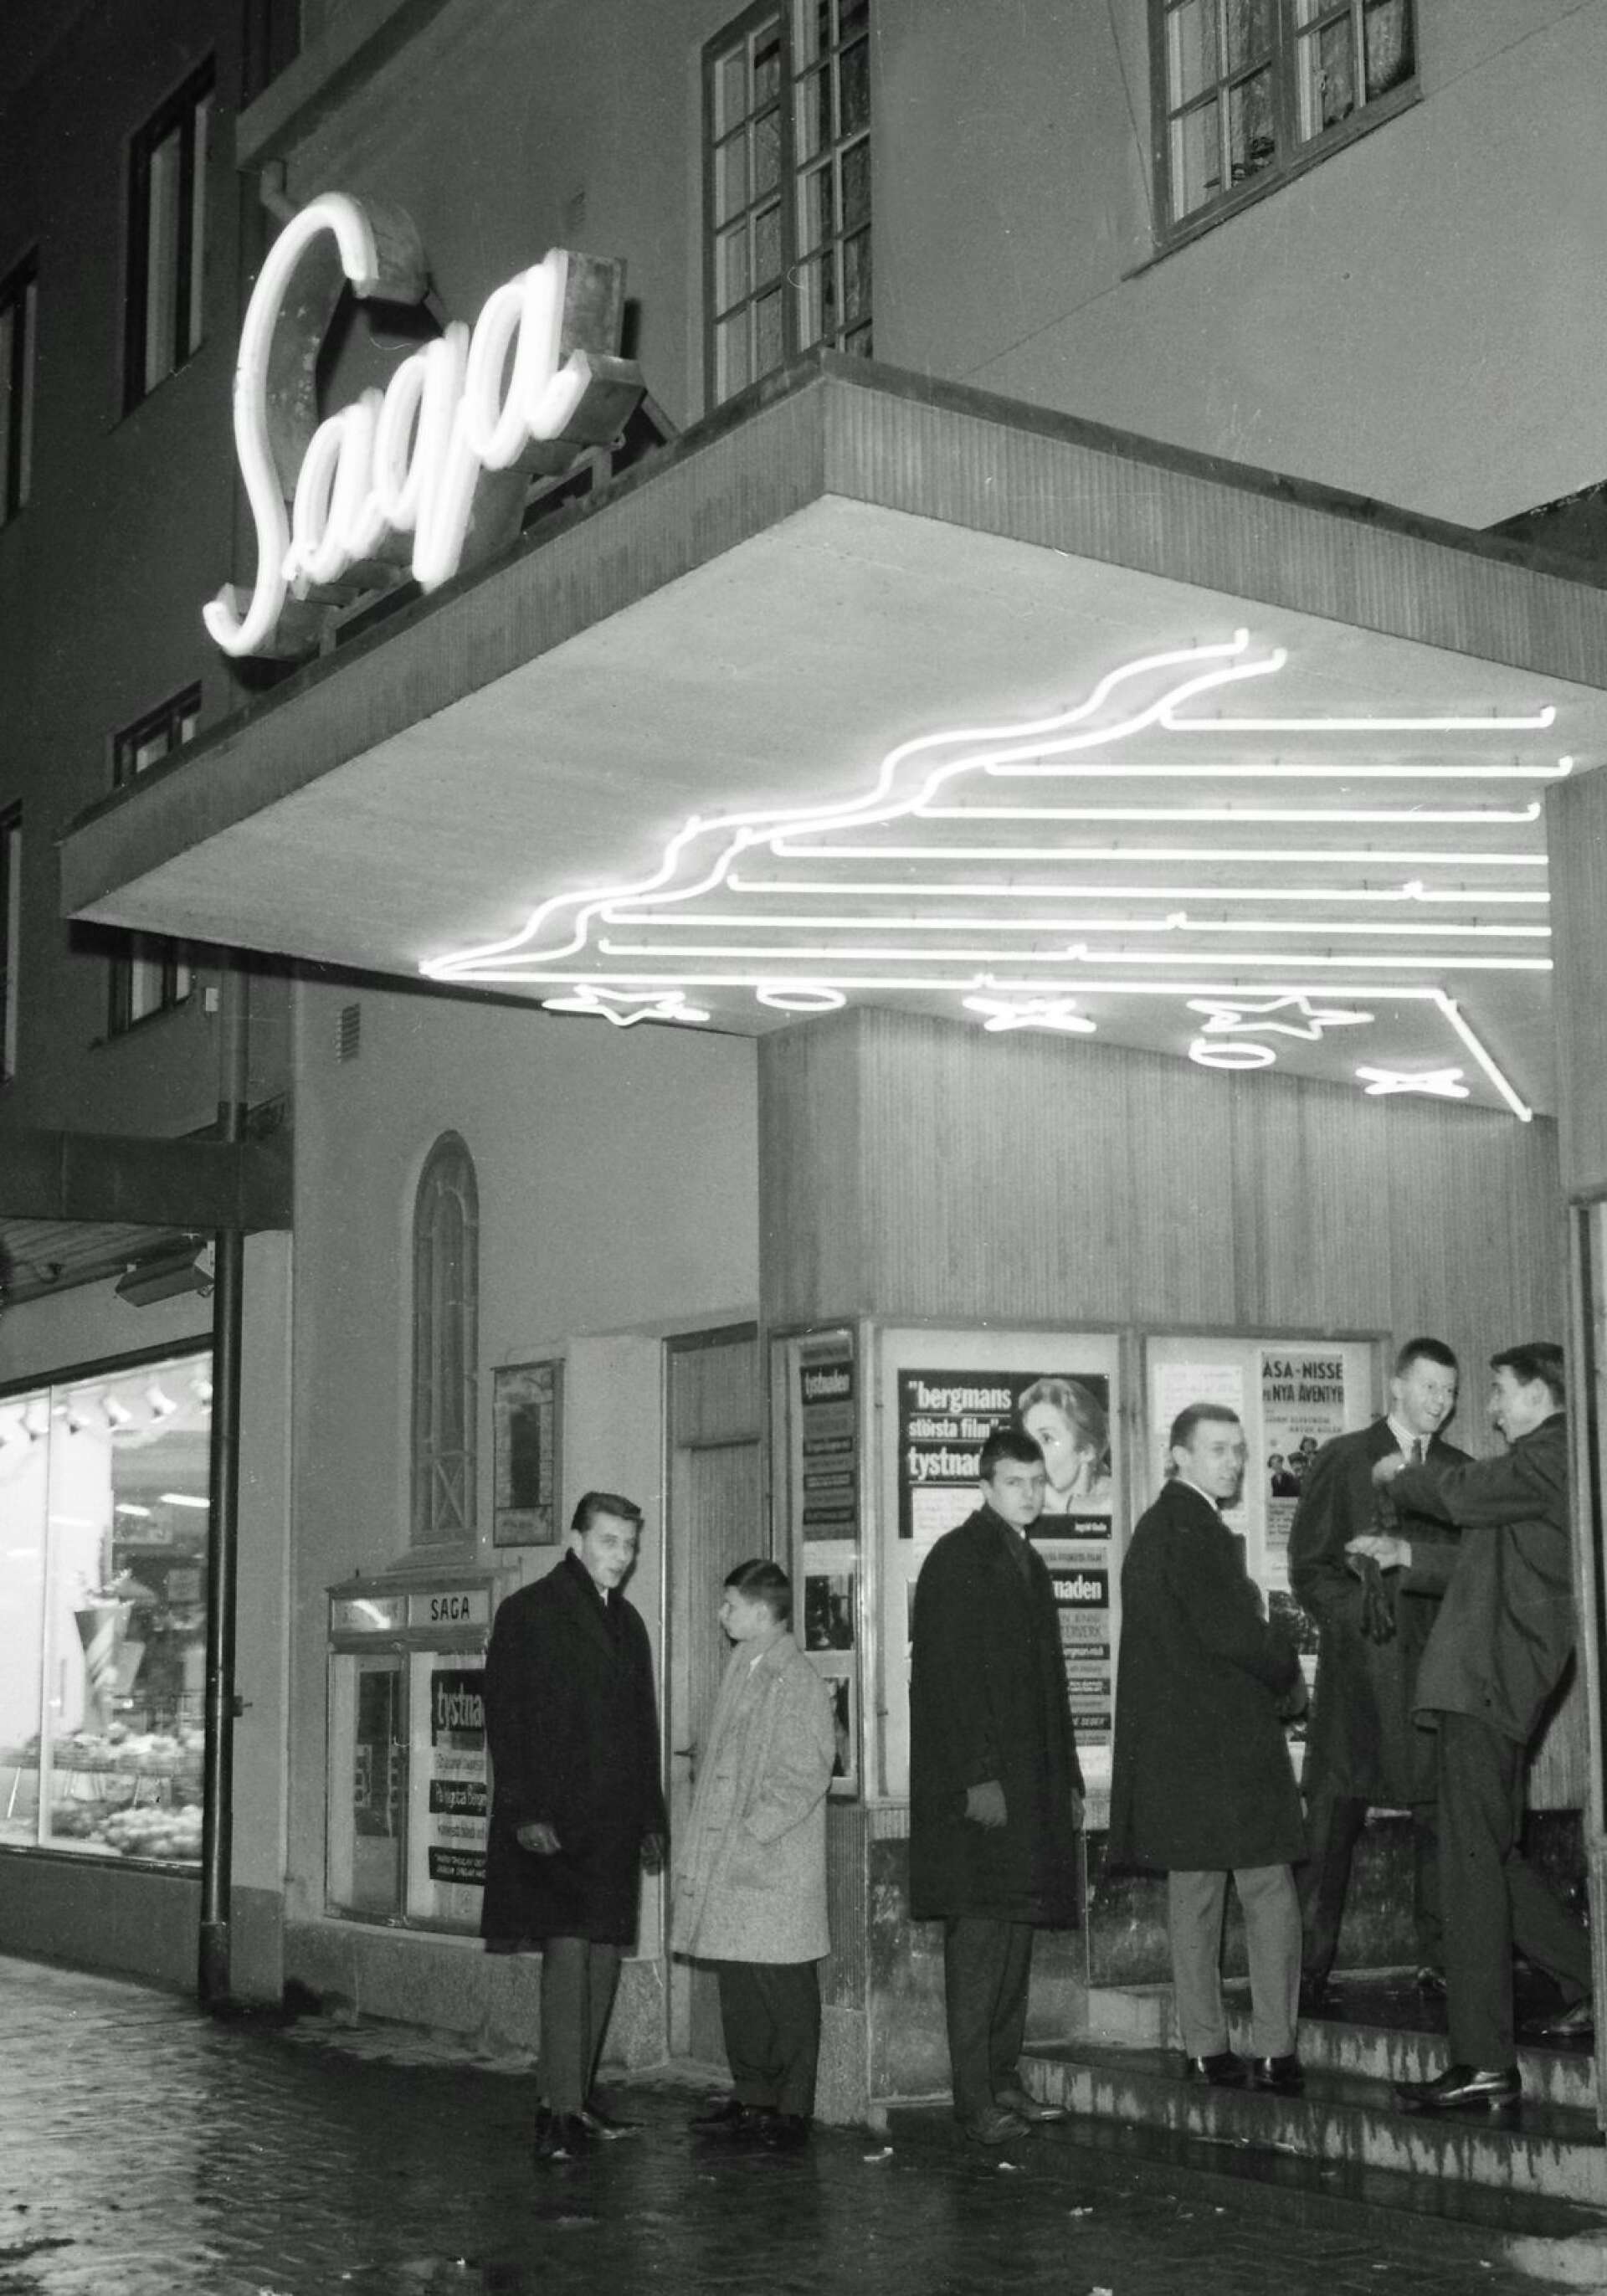 Sagas entré har skiftat utseende några gånger. Med neonljus lockade man en gång besökare till bion. Bilden togs 1963. Affischerna avslöjar att filmen som då visades var Ingmar Bergmans Tystnaden. Som matiné gick Åsa-Nisse på nya äventyr.